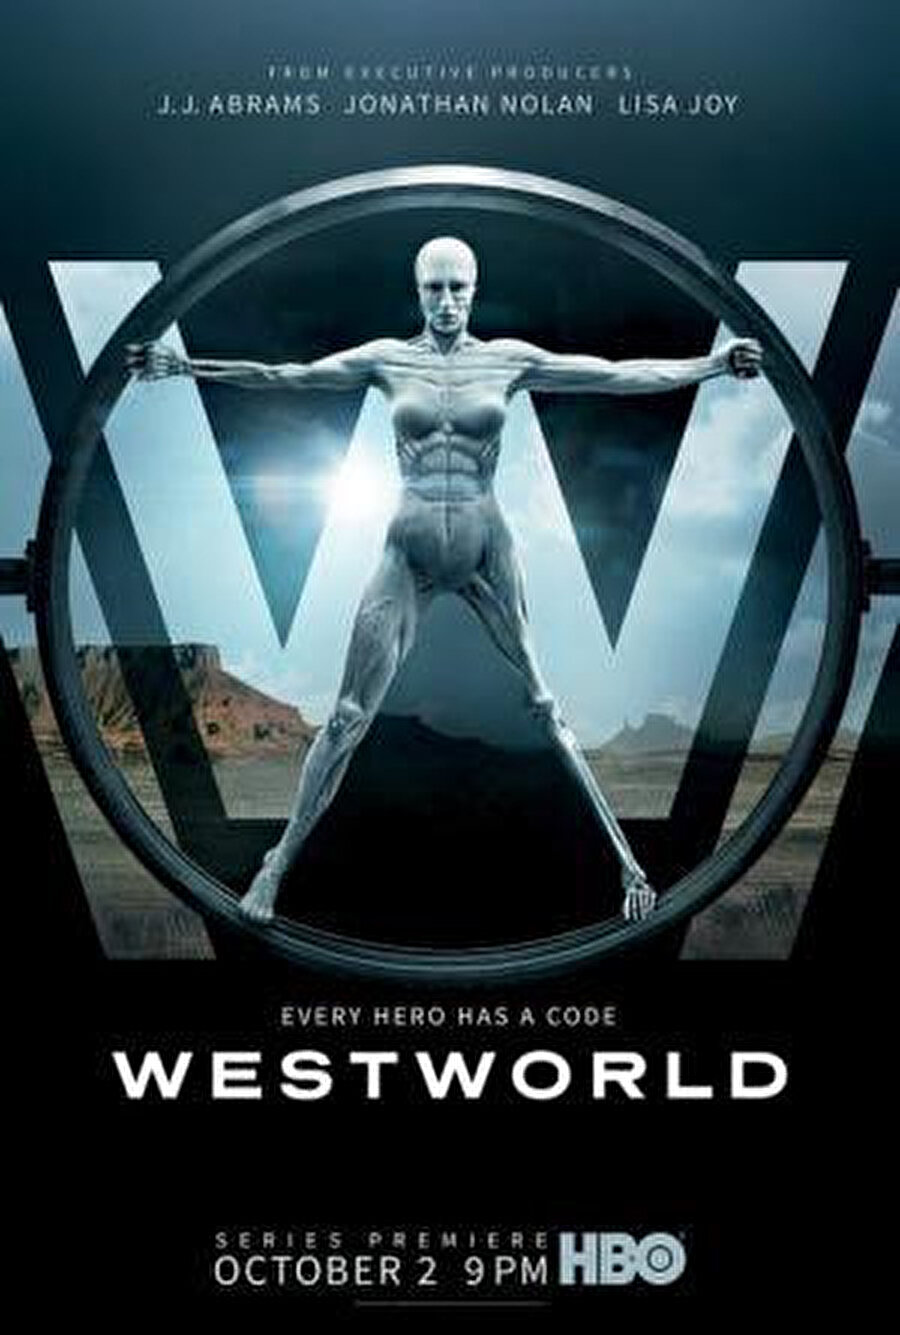 1973 yılında çekilen orijinal versiyonunun yeniden uyarlaması olan Westworld (2016) bir Vahşi Batı kasabasında, canı sıkılan zenginlerin sınırsızca yaşamasına olanak sağlayan bir tema parkını anlatıyor.